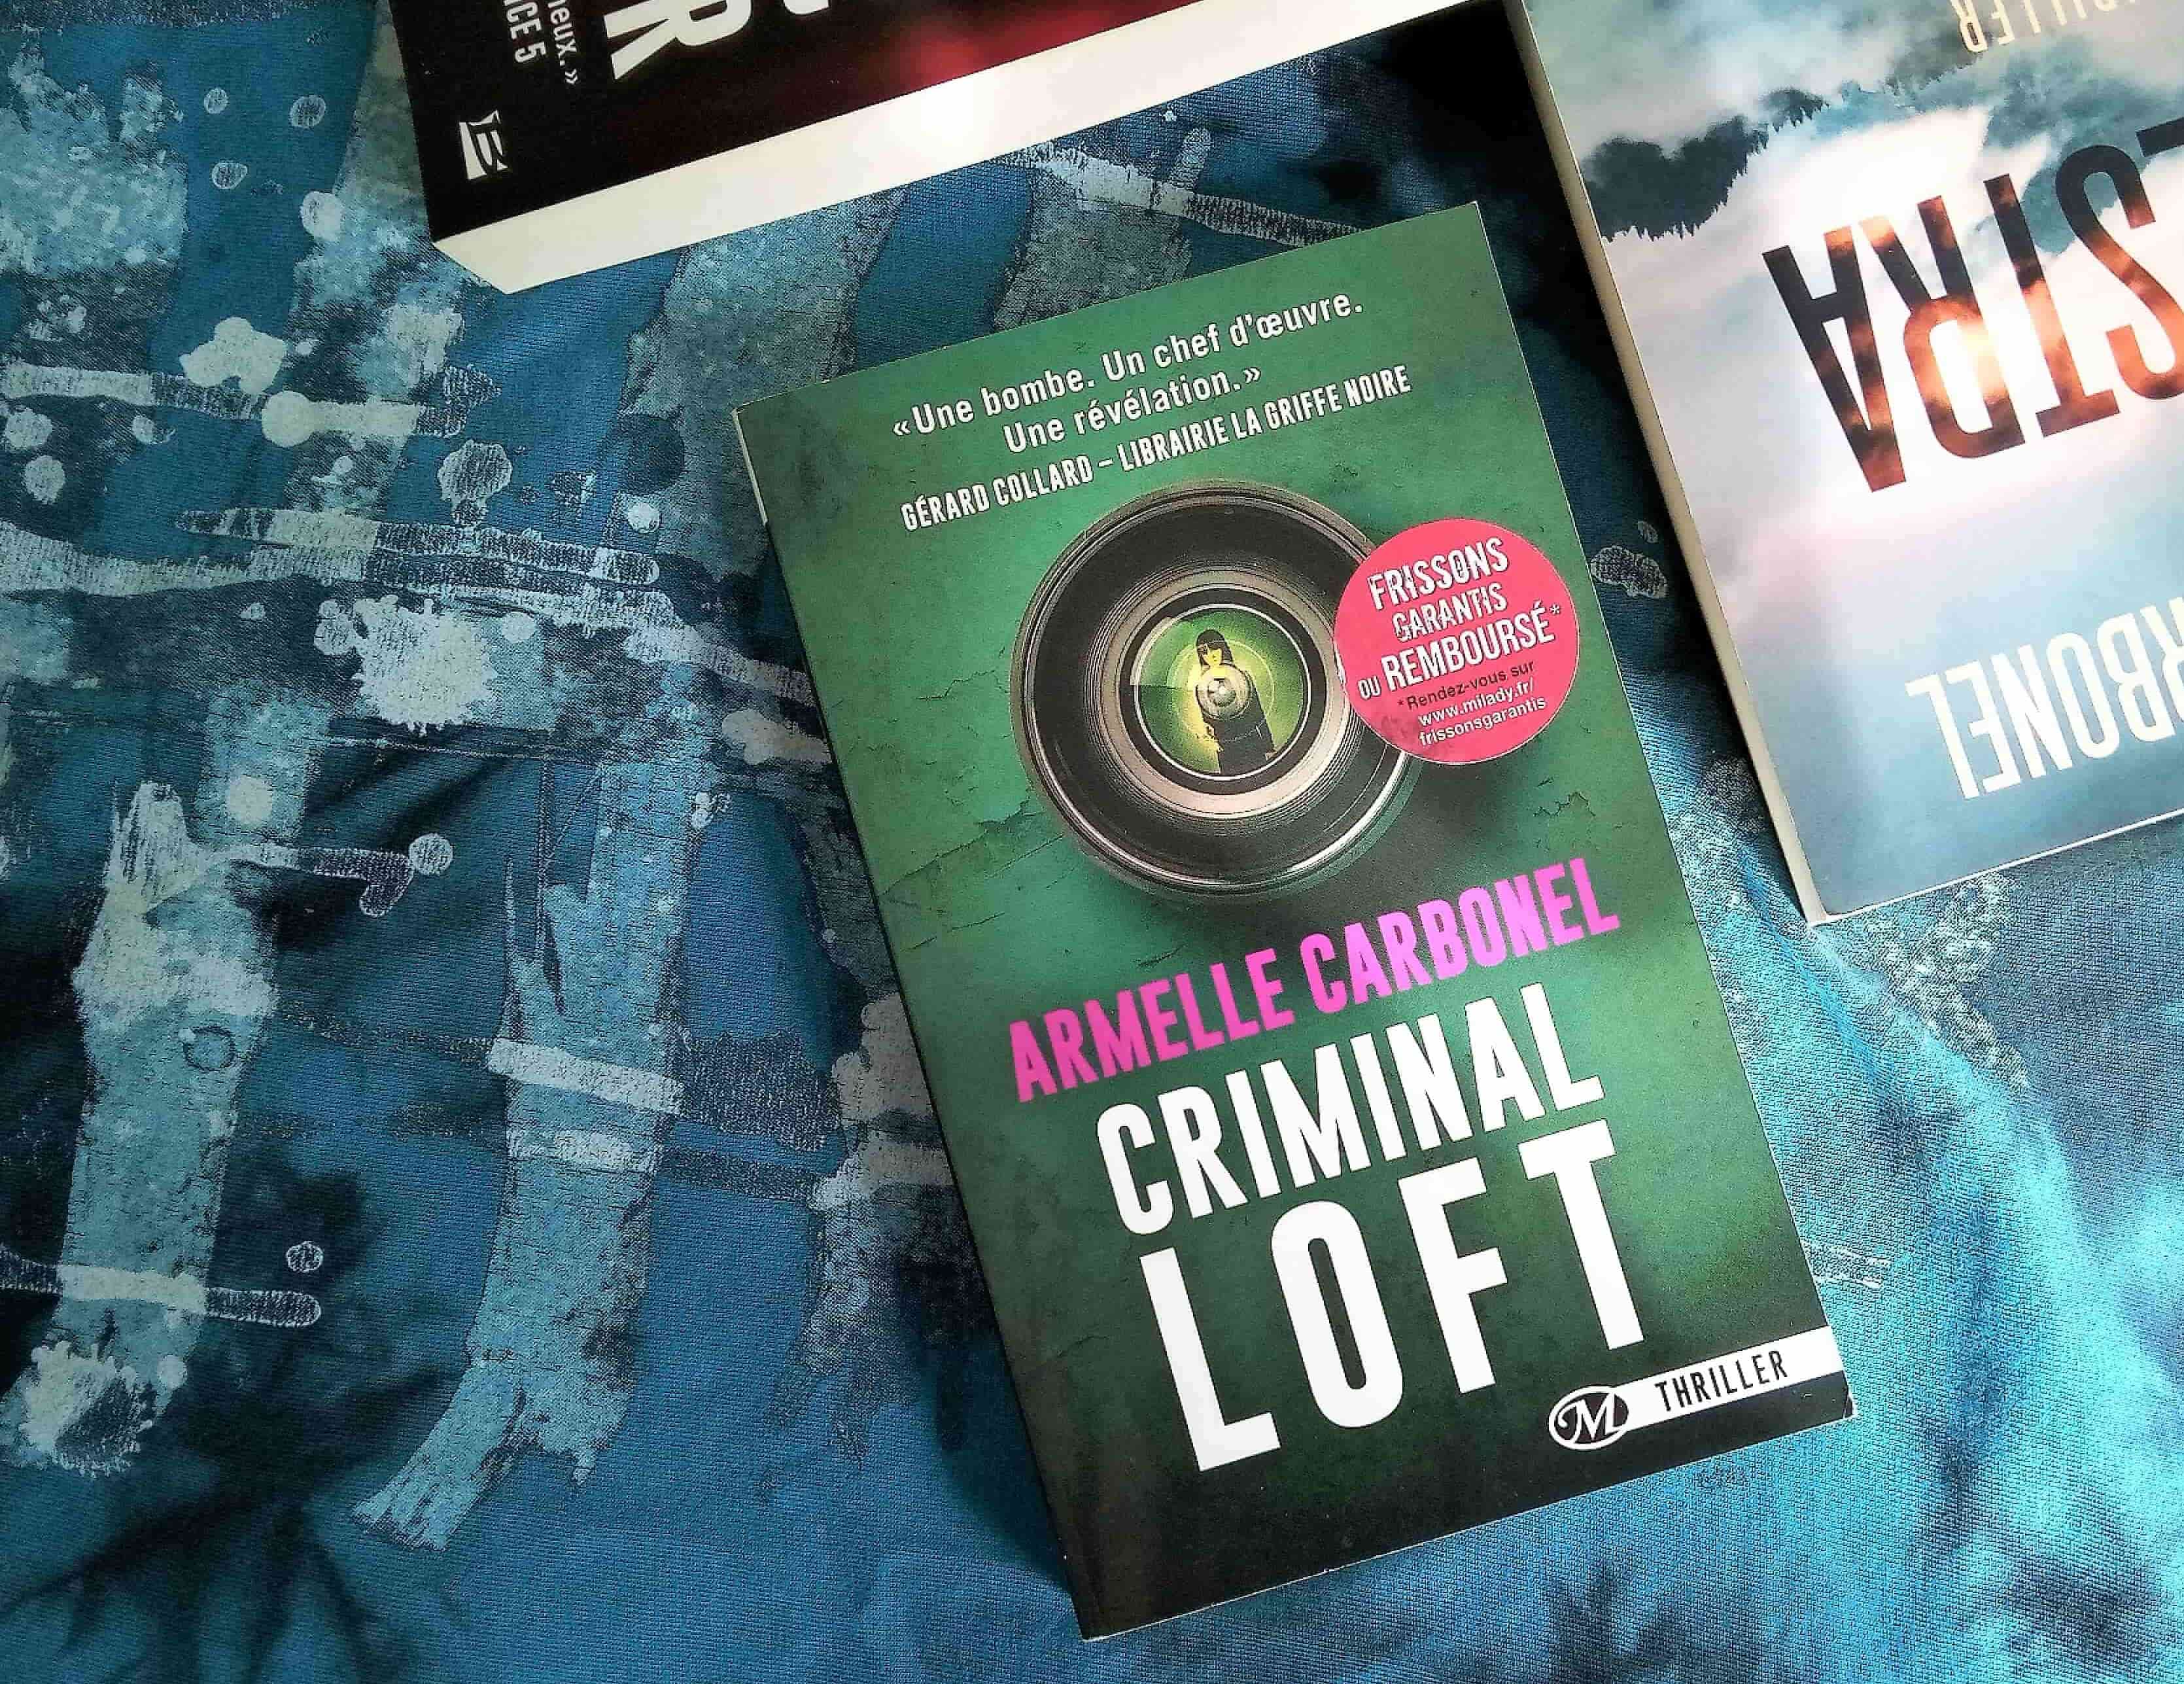 Criminal Loft. Armelle Carbonel, éditions Milady